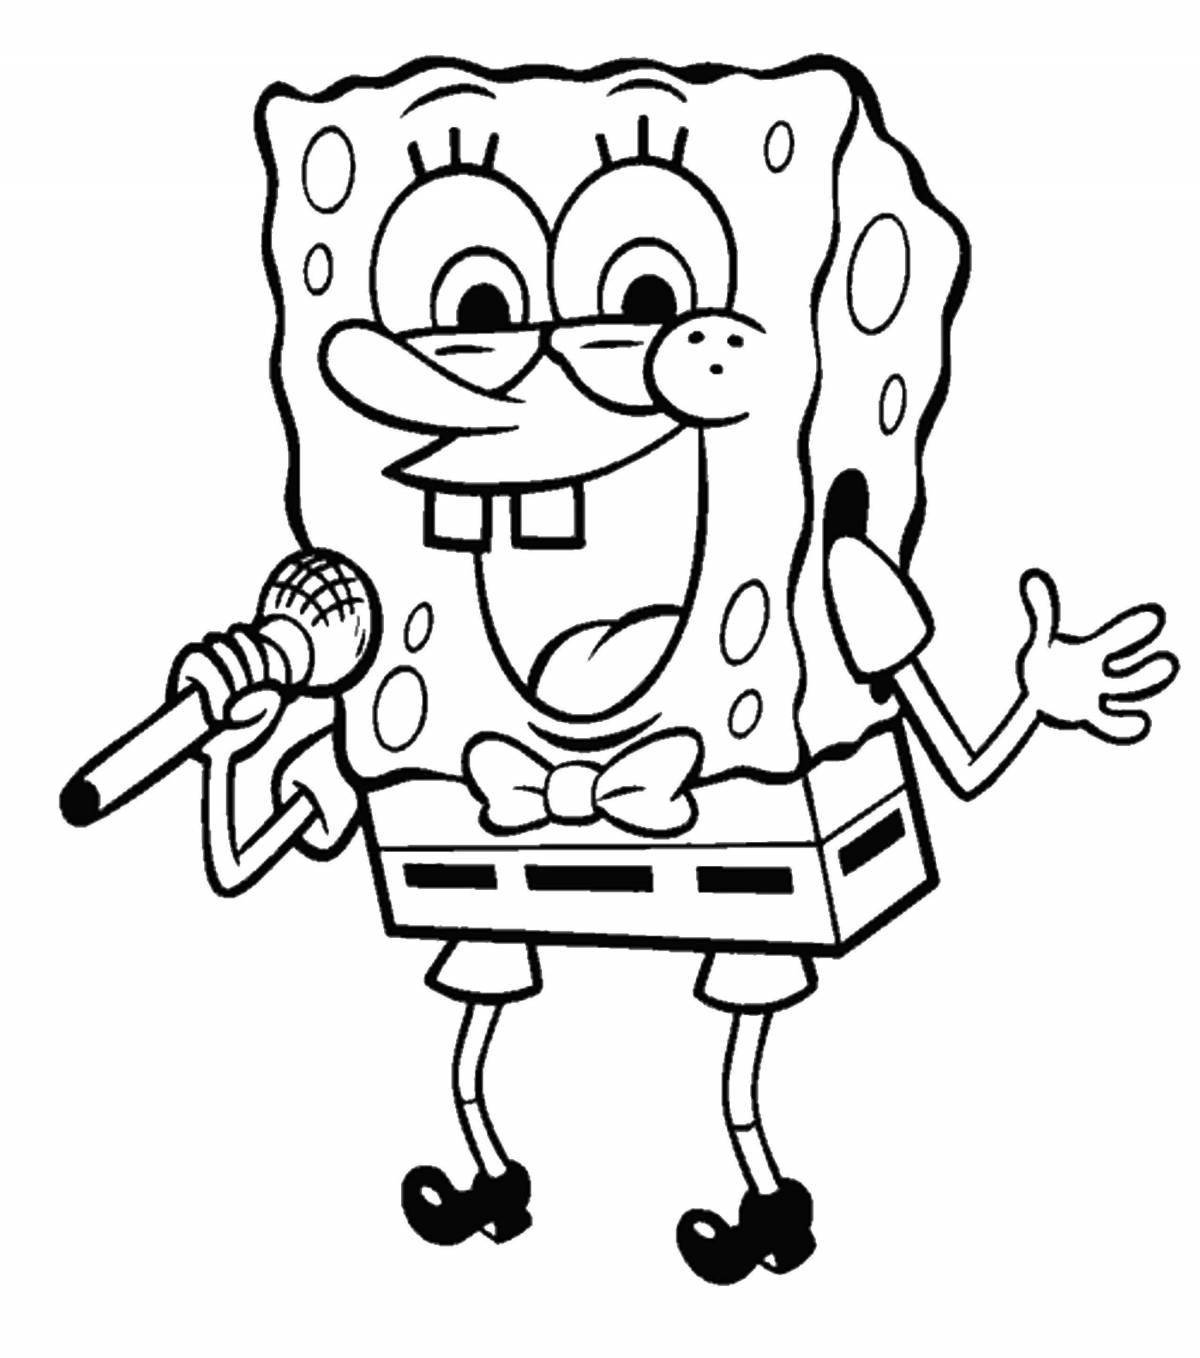 Spongebob fun coloring